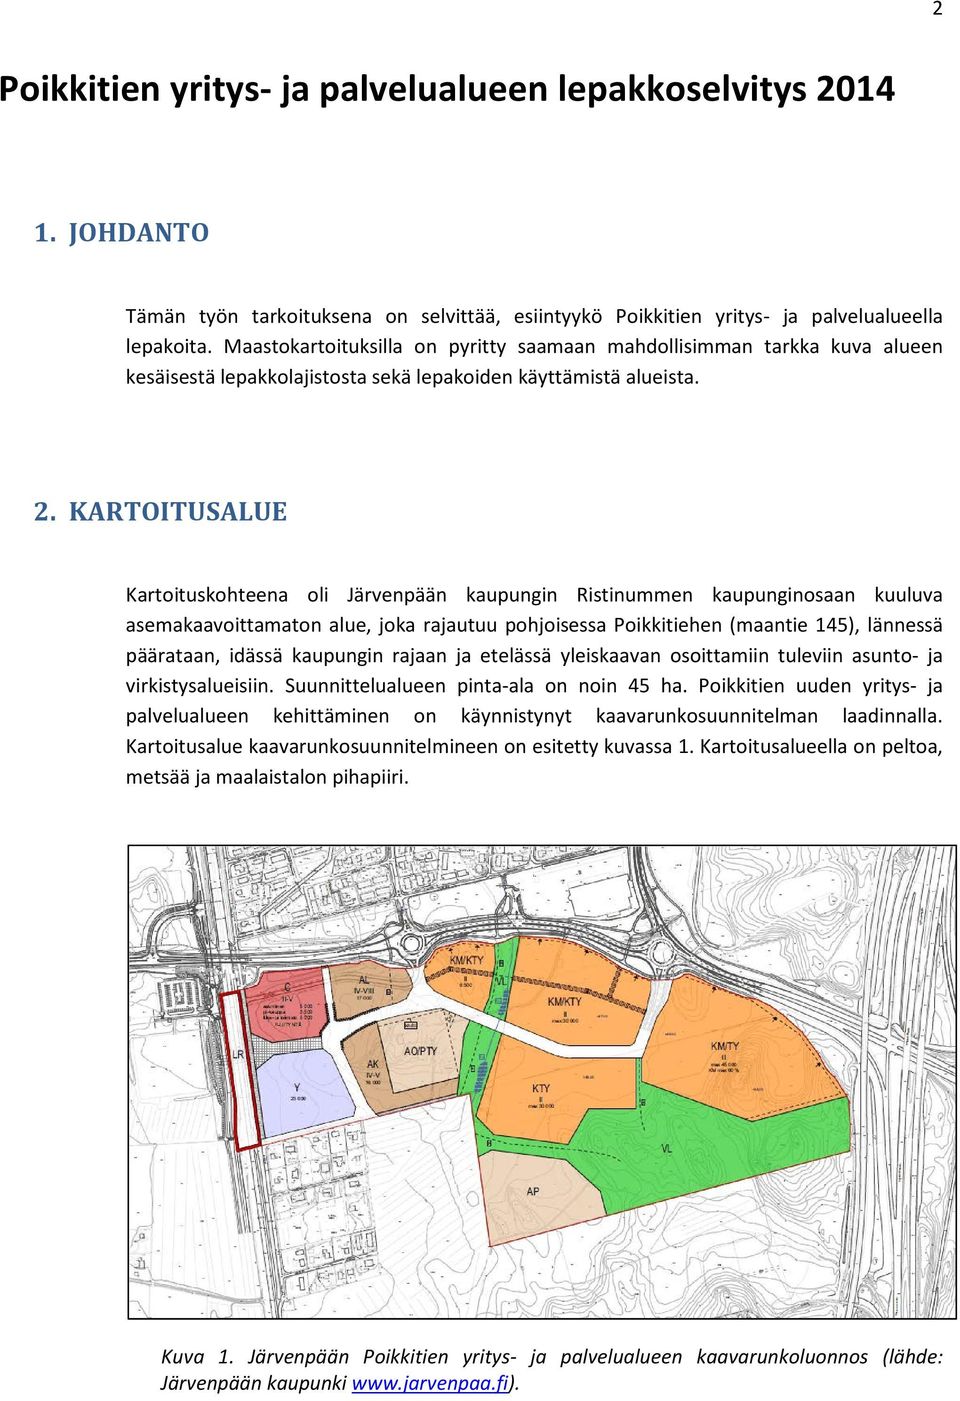 KARTOITUSALUE Kartoituskohteena oli Järvenpään kaupungin Ristinummen kaupunginosaan kuuluva asemakaavoittamaton alue, joka rajautuu pohjoisessa Poikkitiehen (maantie 145), lännessä päärataan, idässä